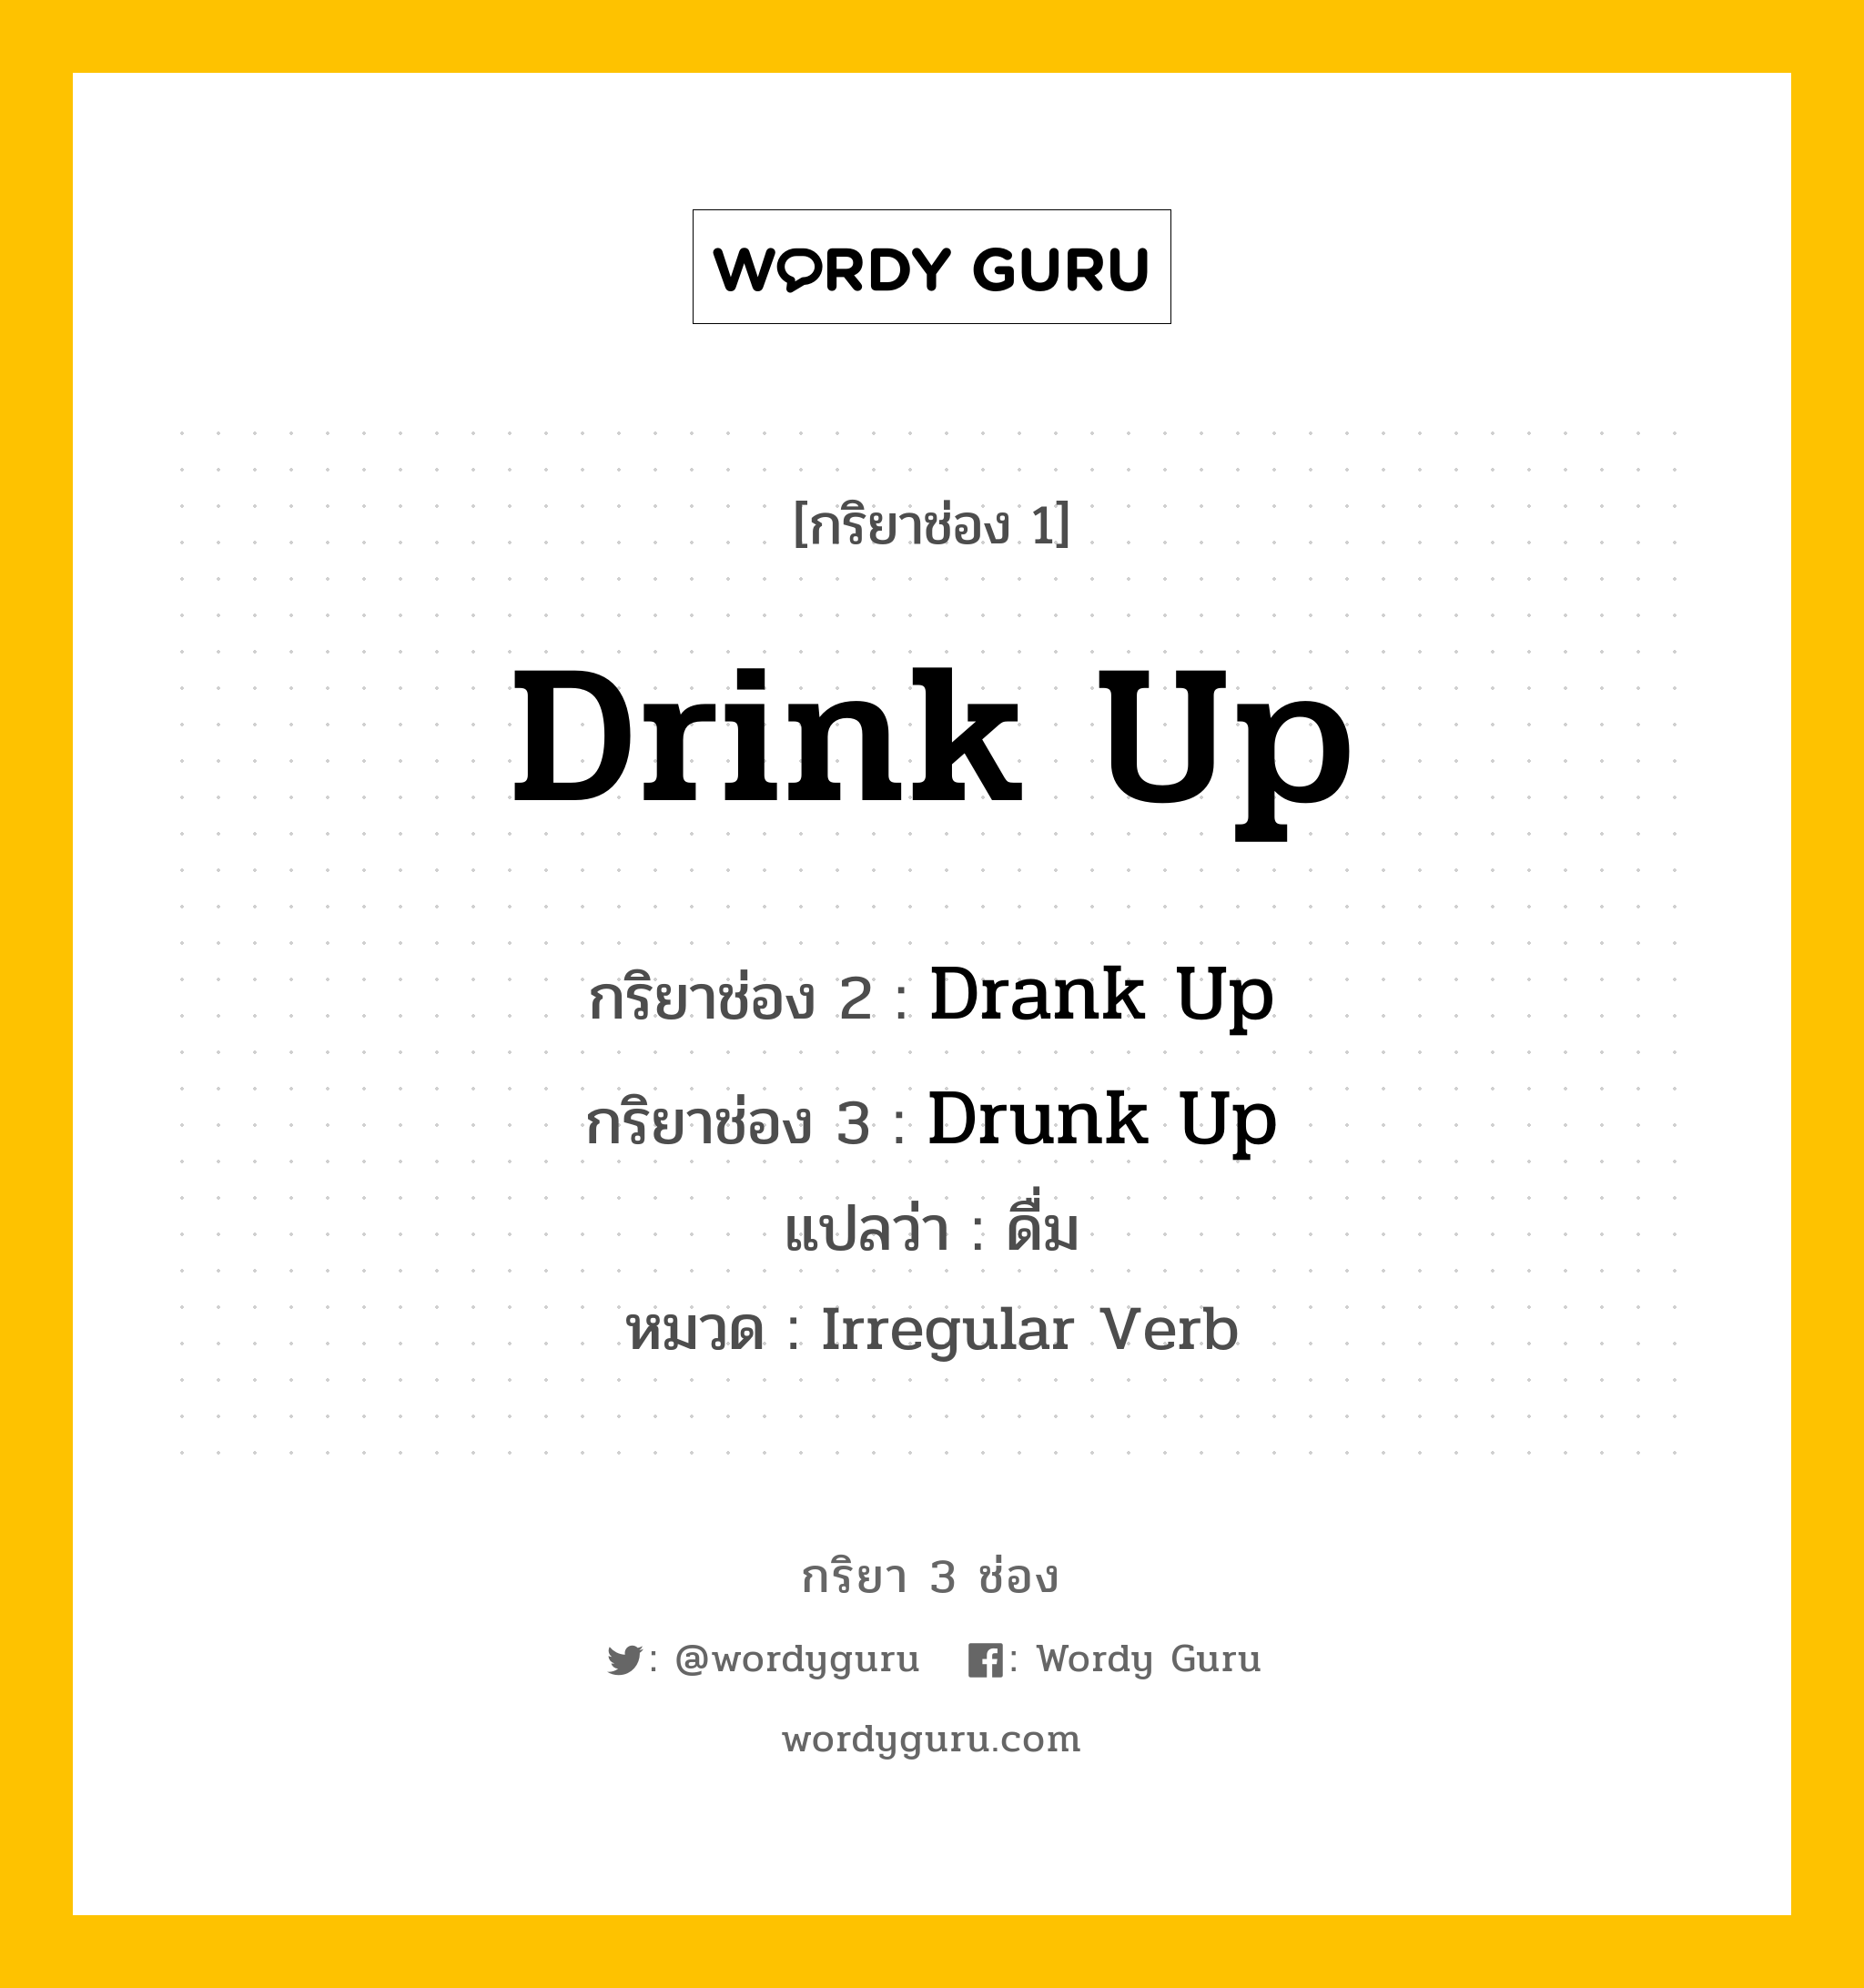 Drink Up มีกริยา 3 ช่องอะไรบ้าง? คำศัพท์ในกลุ่มประเภท Irregular Verb, กริยาช่อง 1 Drink Up กริยาช่อง 2 Drank Up กริยาช่อง 3 Drunk Up แปลว่า ดื่ม หมวด Irregular Verb หมวด Irregular Verb